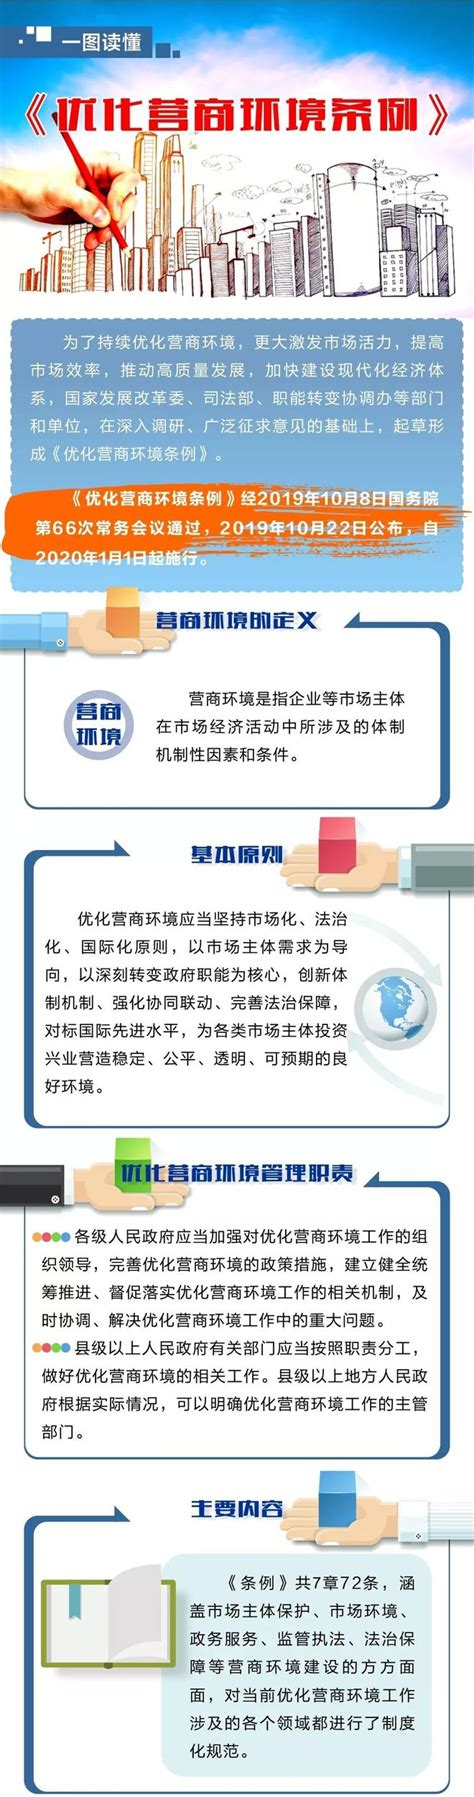 杭州各区营商环境考核